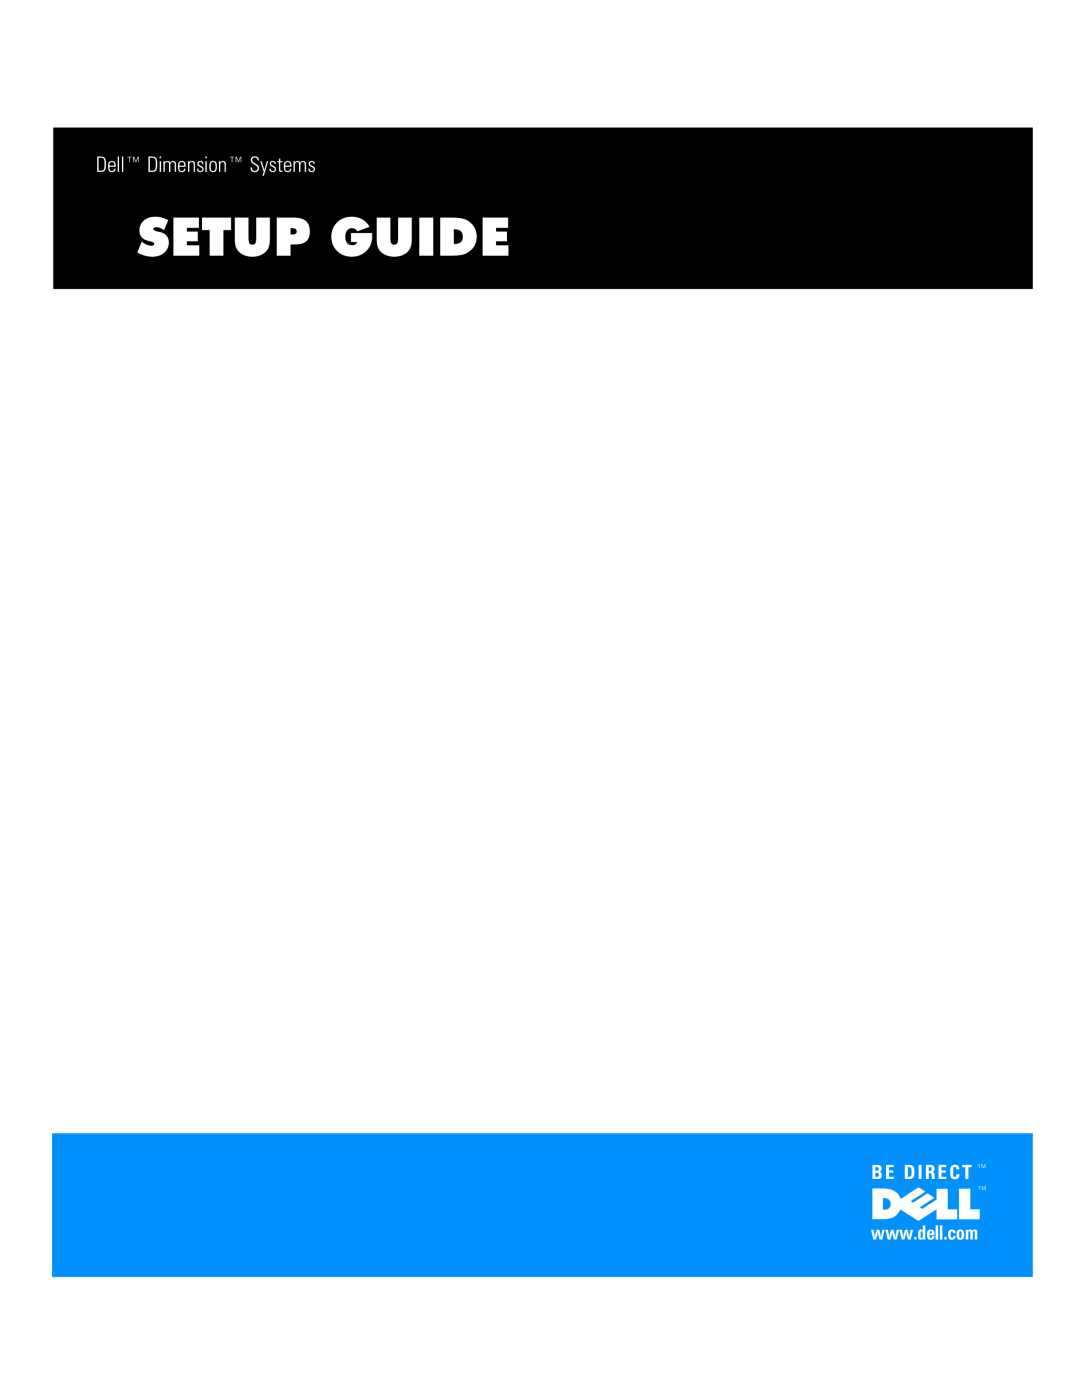 Dell Lxxxc manual 6783*8, HOOŒLPHQVLRQŒ6\VWHPV, 5 & 7 Œ, Zzzghoofrp 